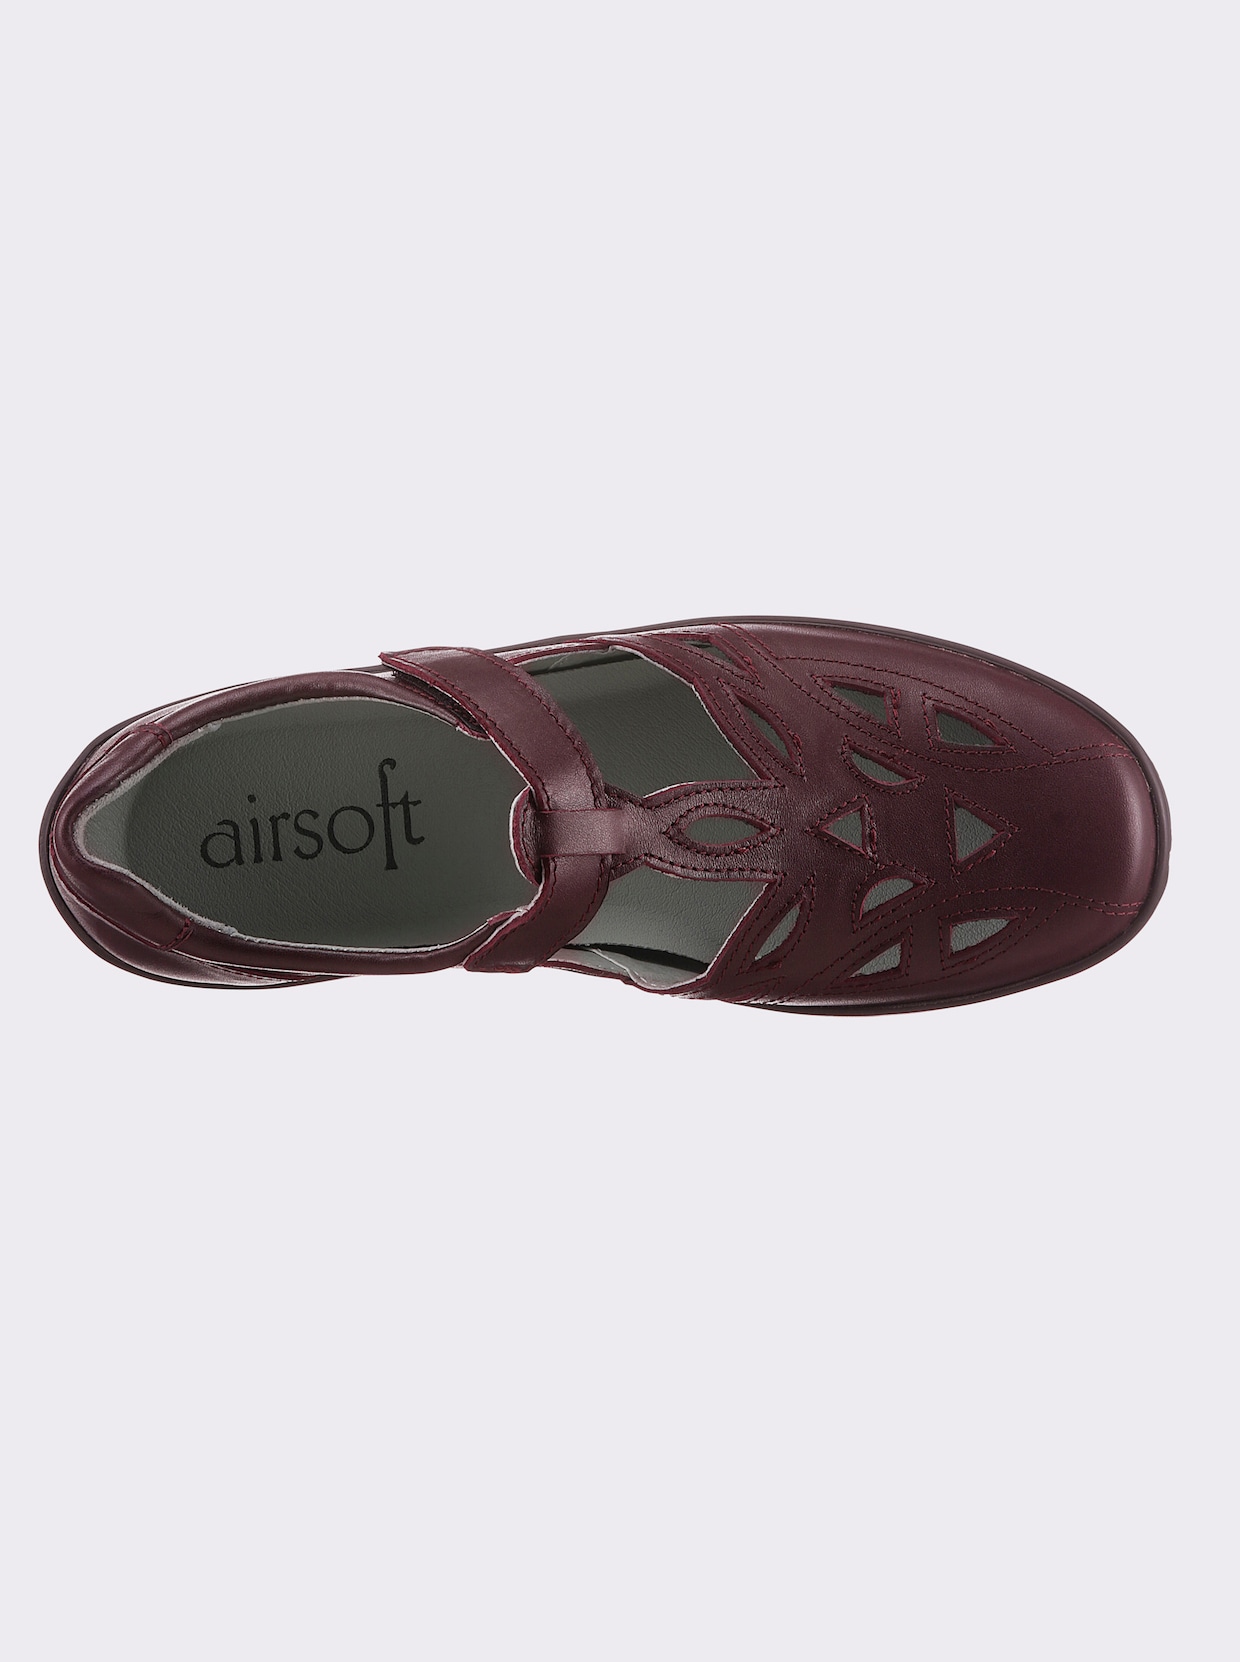 airsoft comfort+ Topánky so zapínaním na suchý zips - bordová